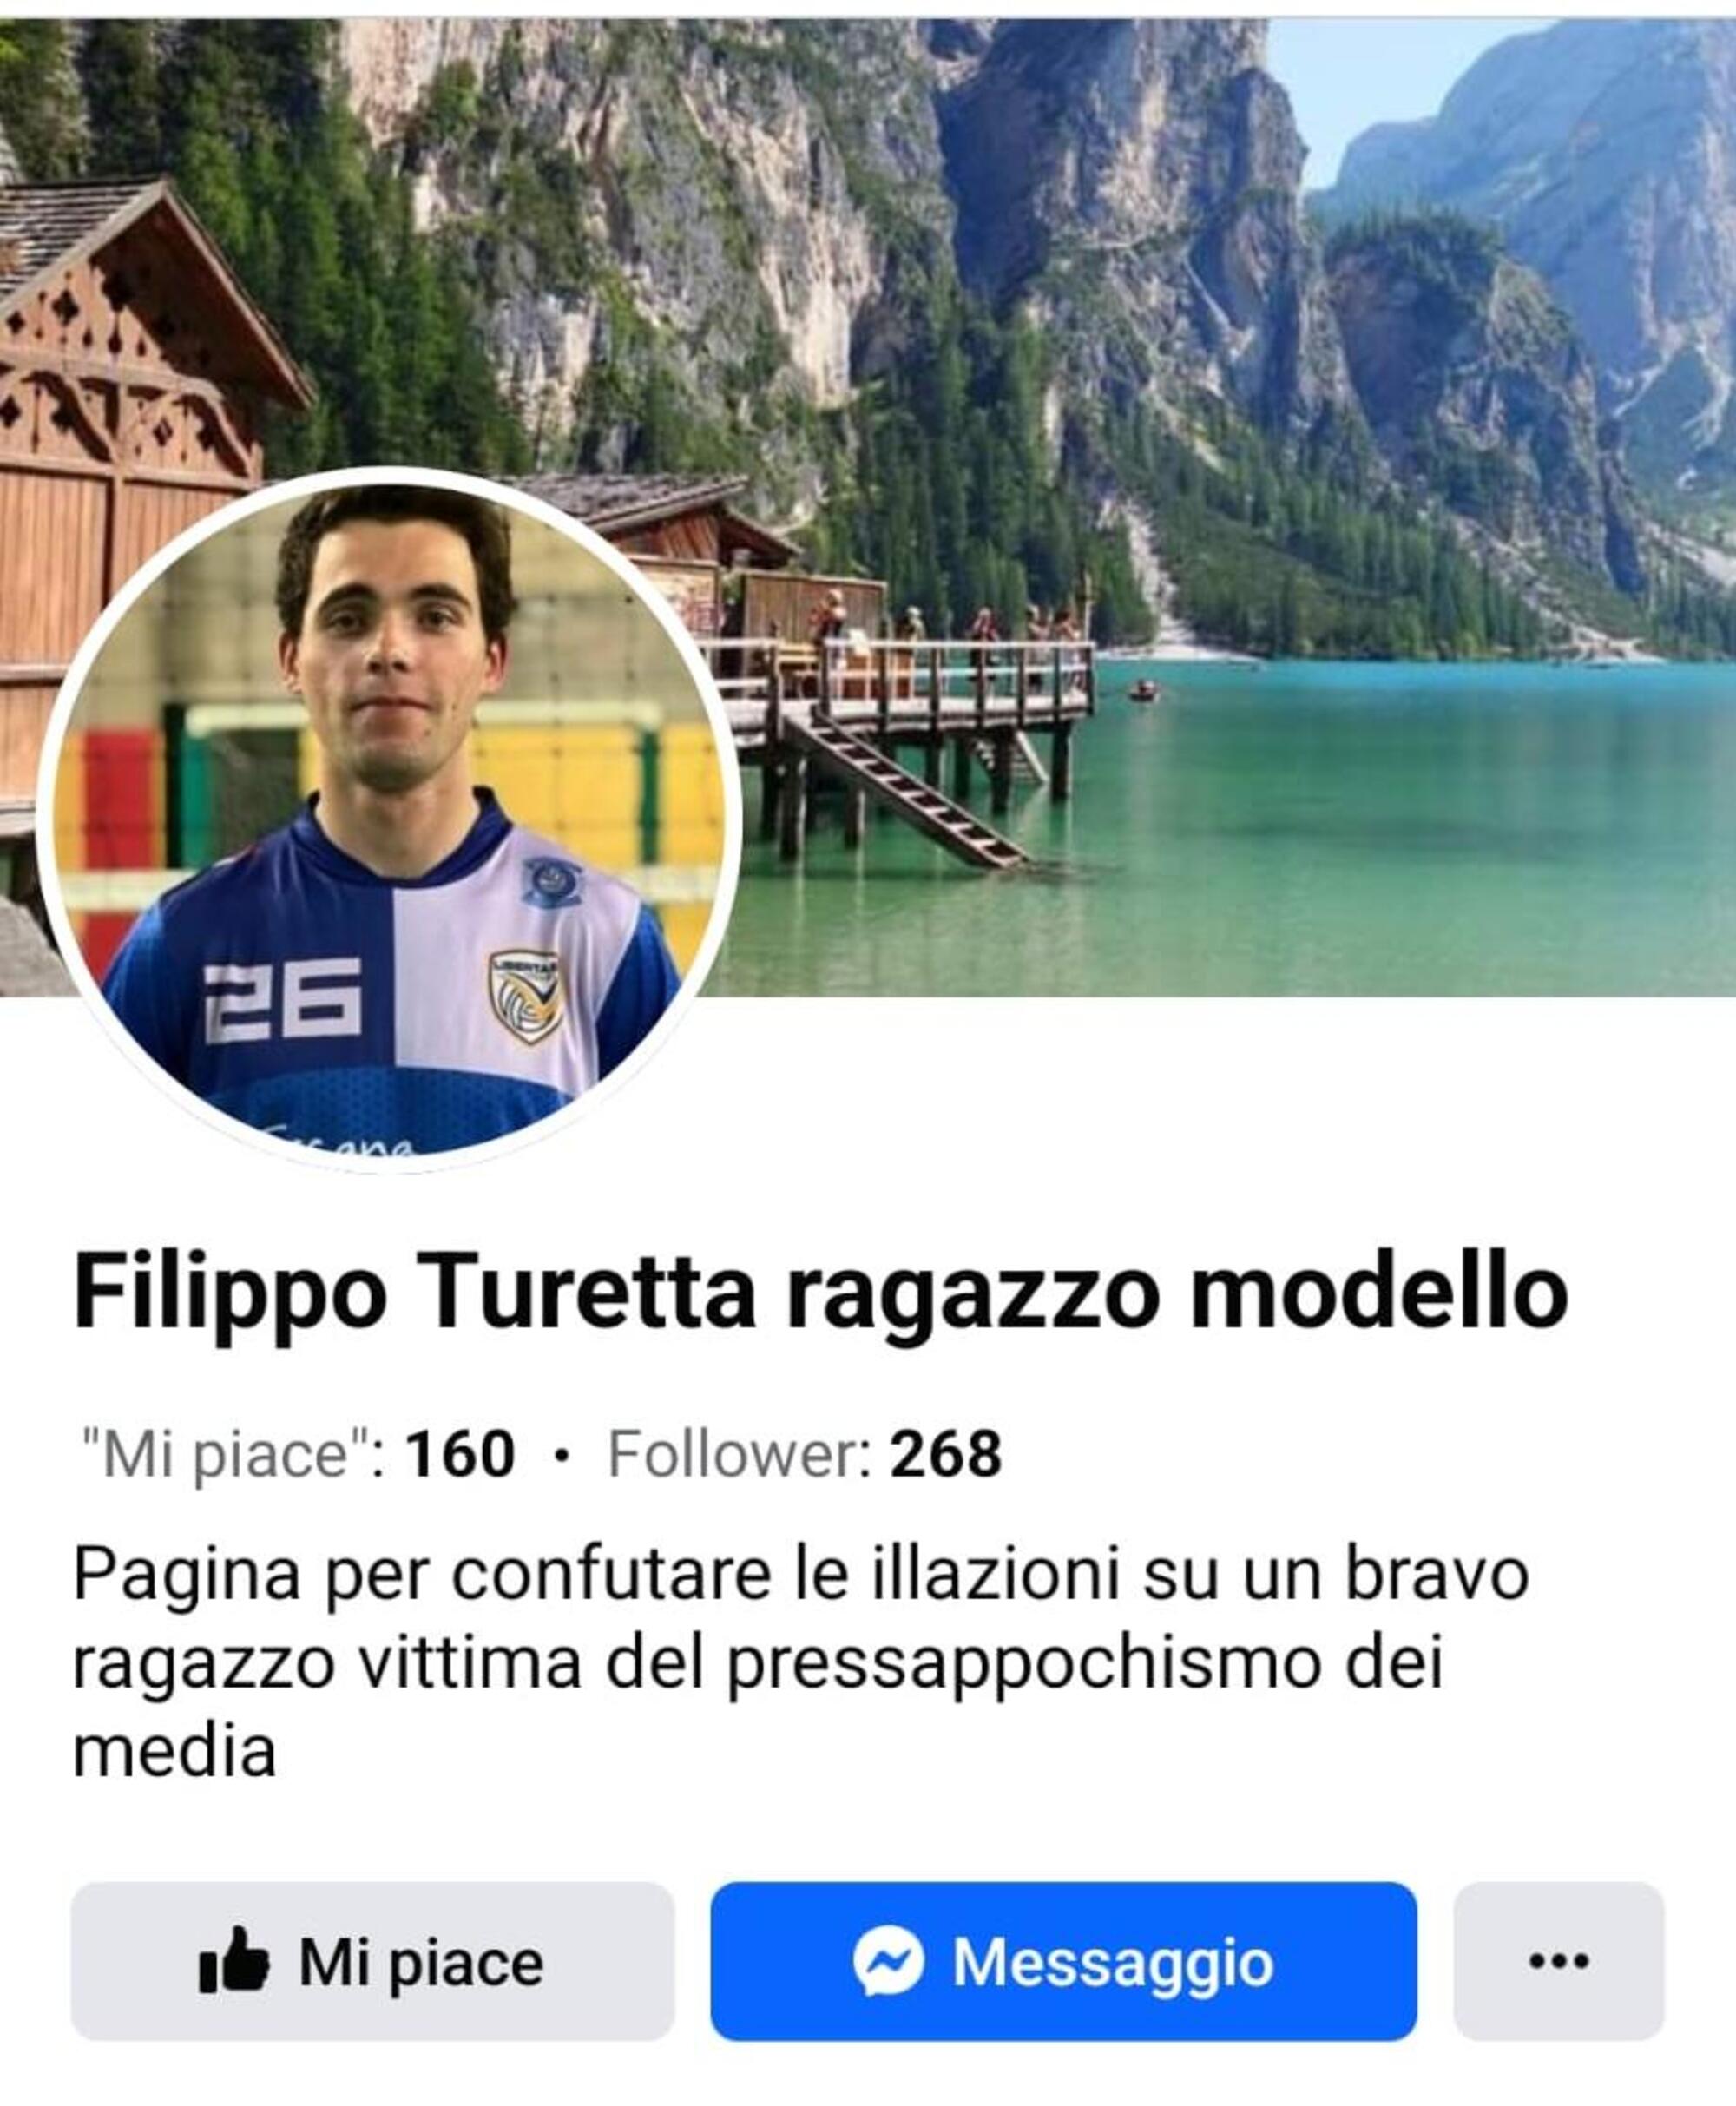 Le pagine social che ironizzano su Filippo Turetta